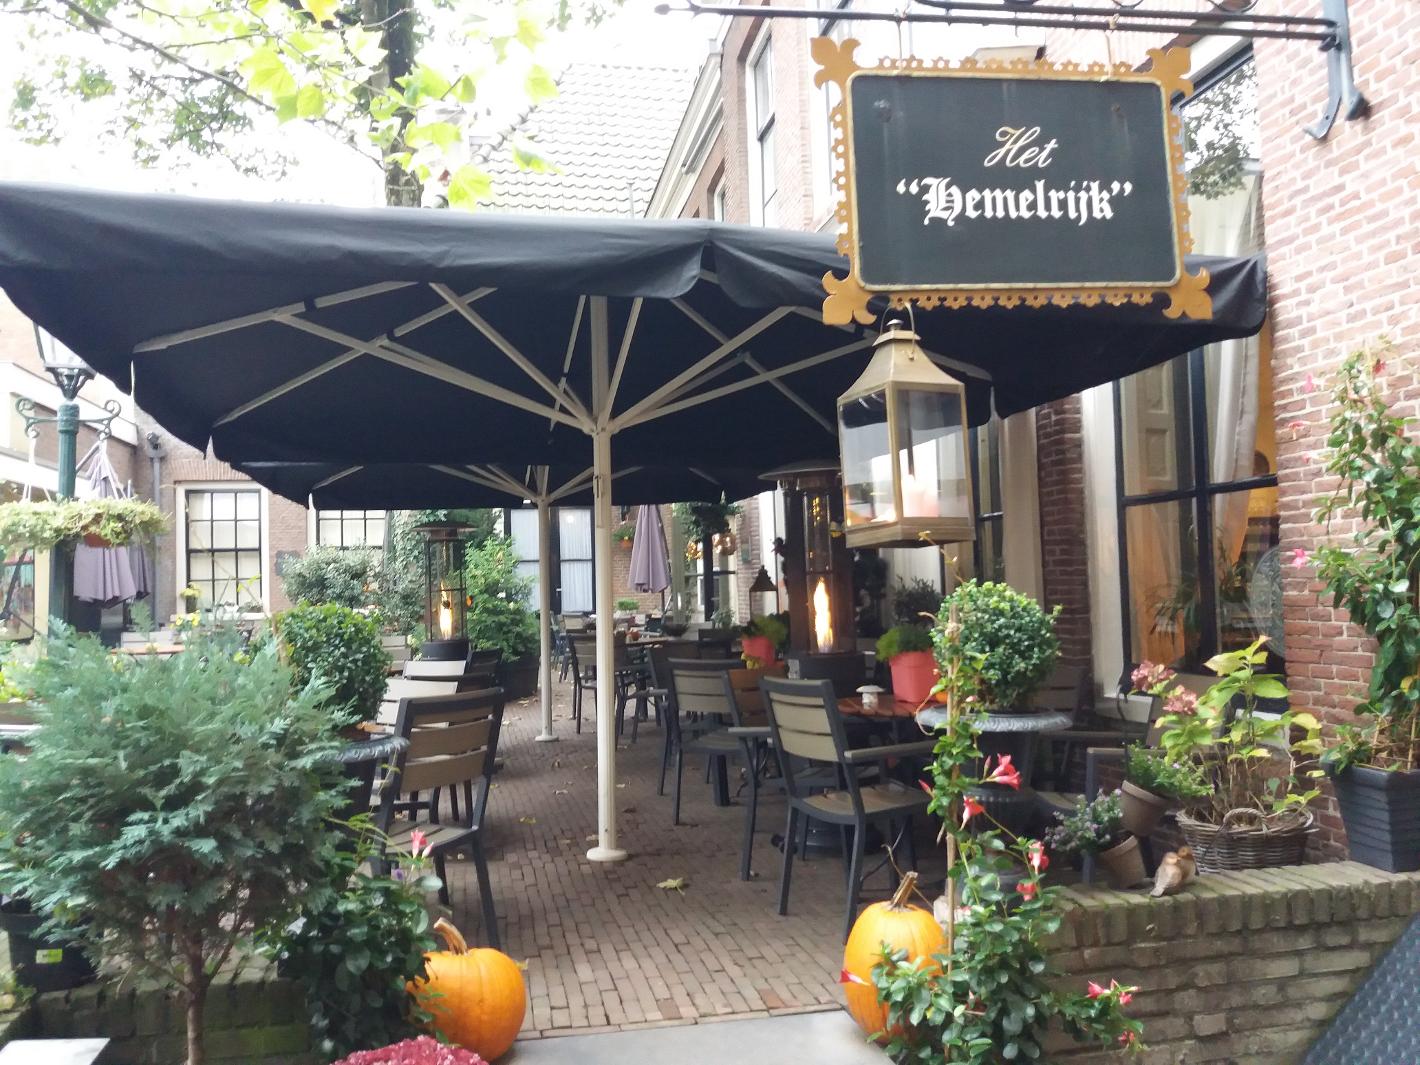 Foto Koffiehuis het Hemelrijk in Arnhem, Essen & Trinken, Trinke kaffee, tee, Genieße ein köstliches mittagessen - #1